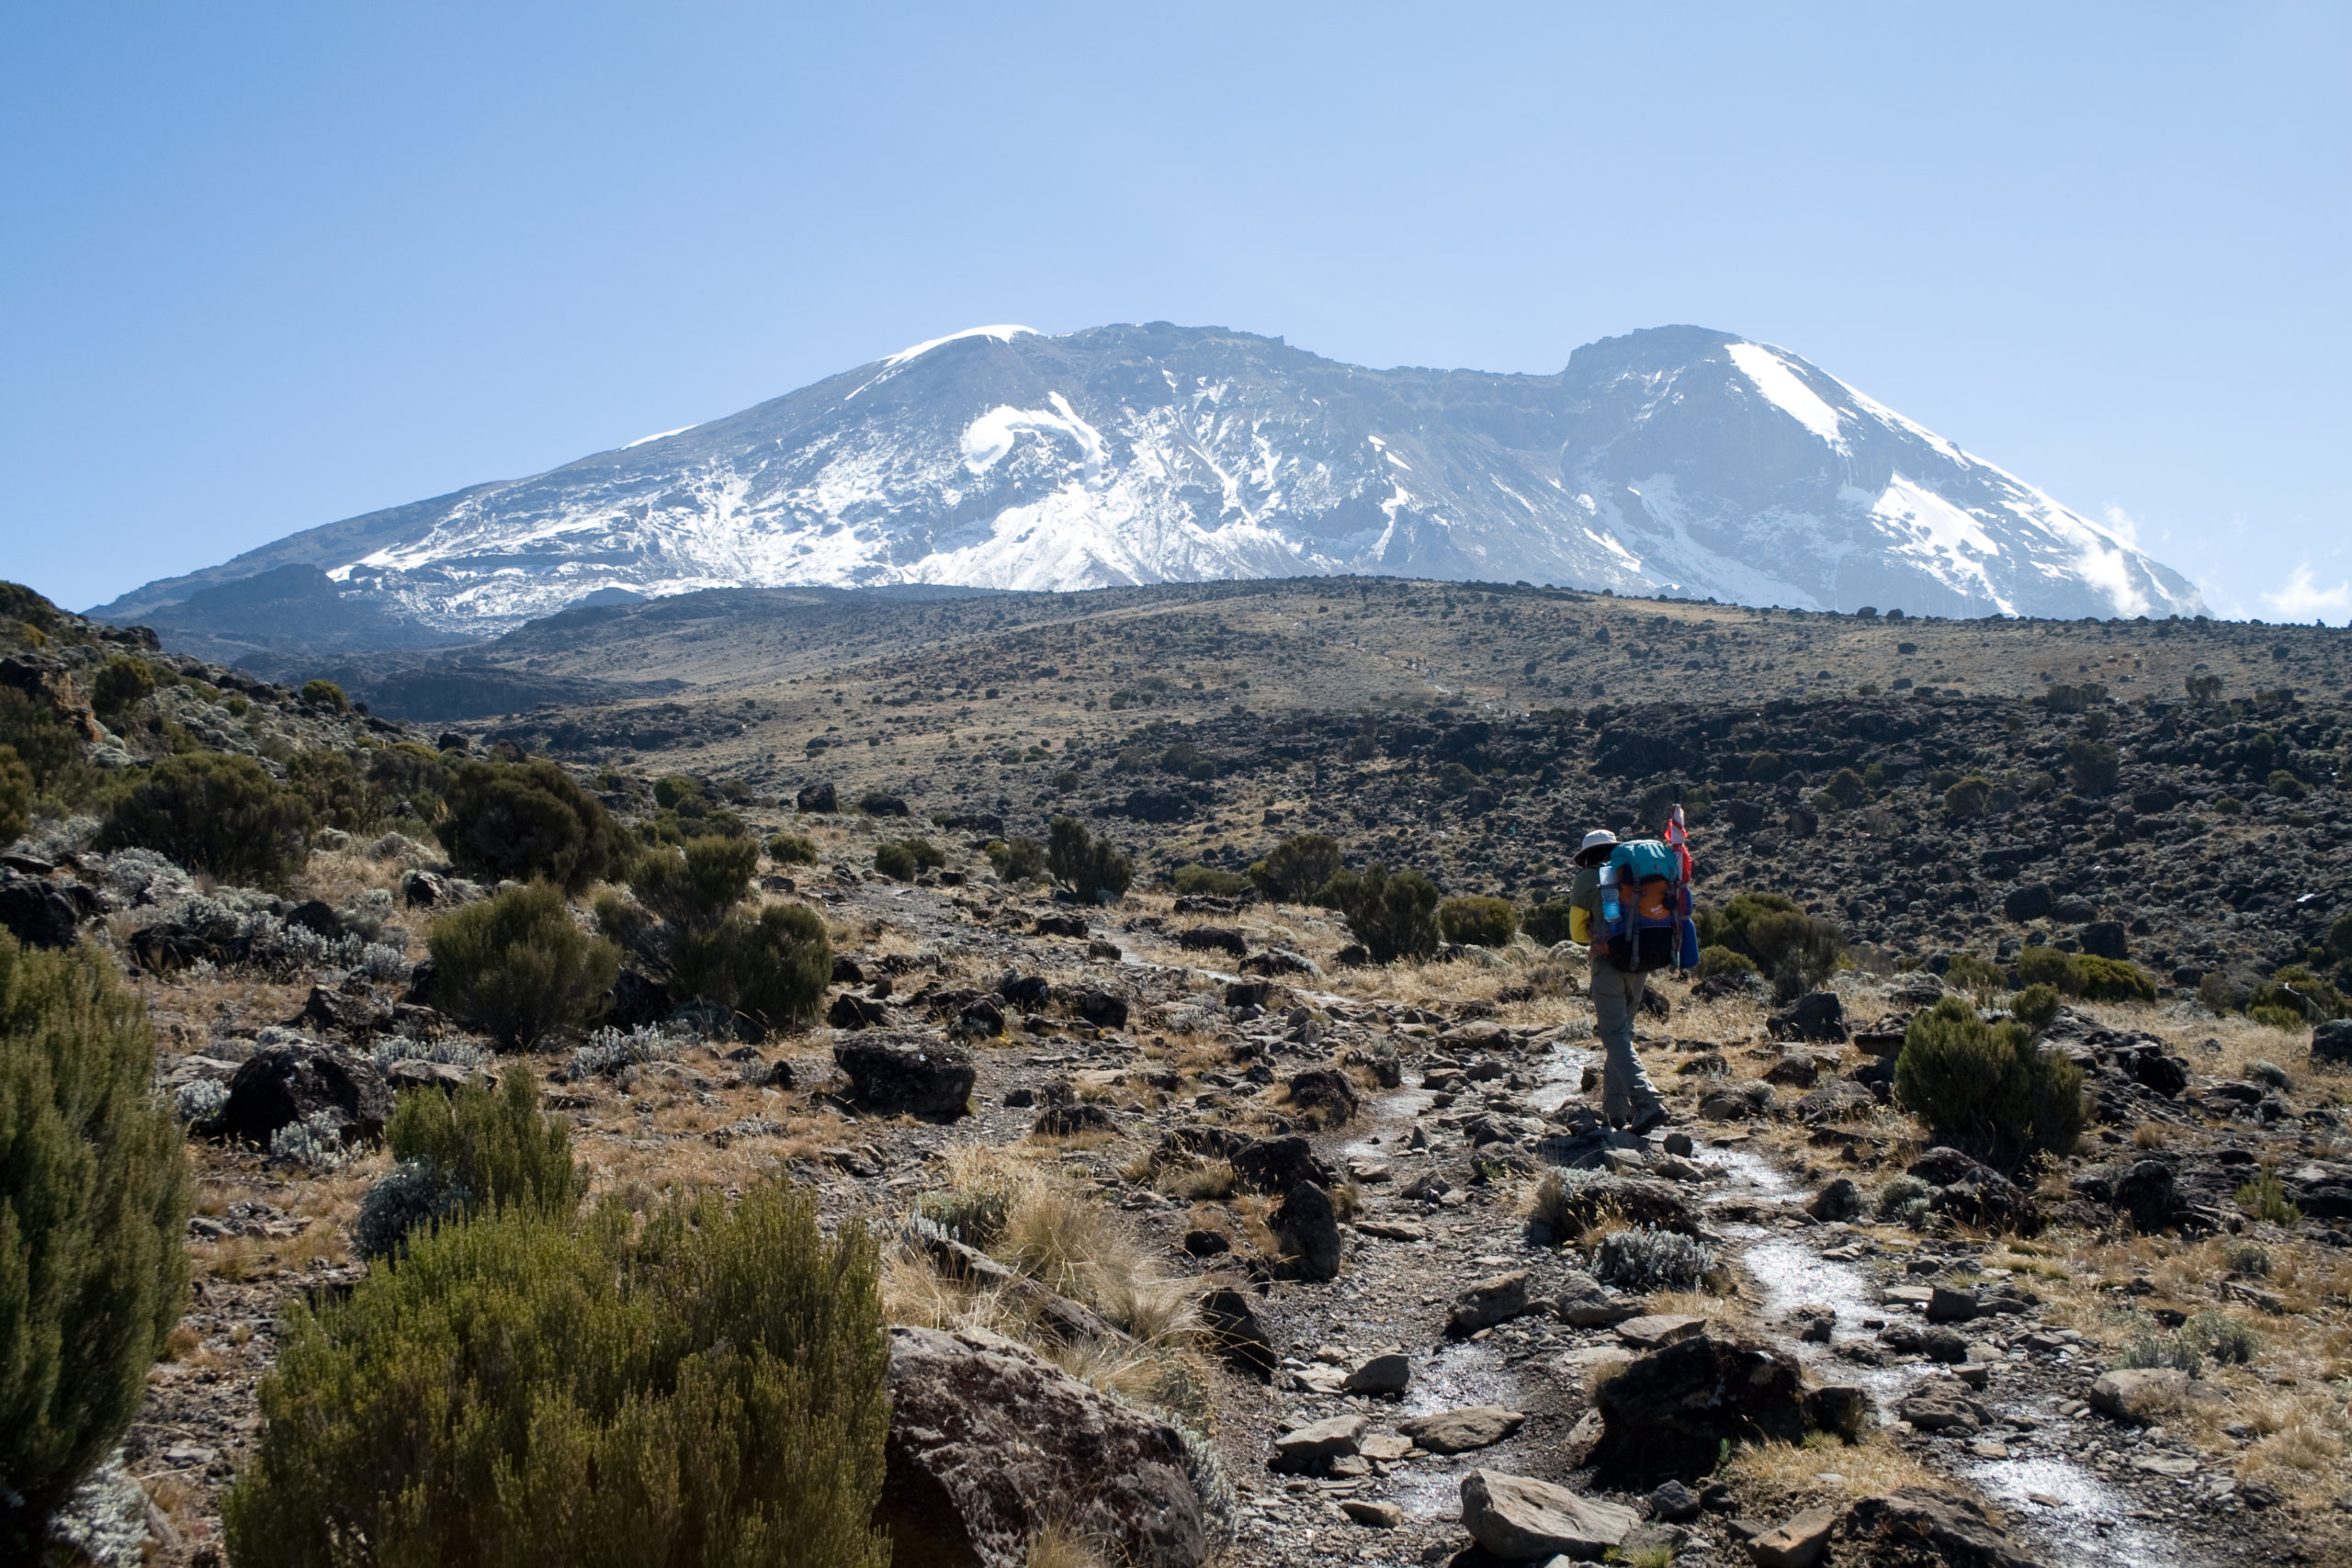 Kilimanjaro by Stig Nygaard